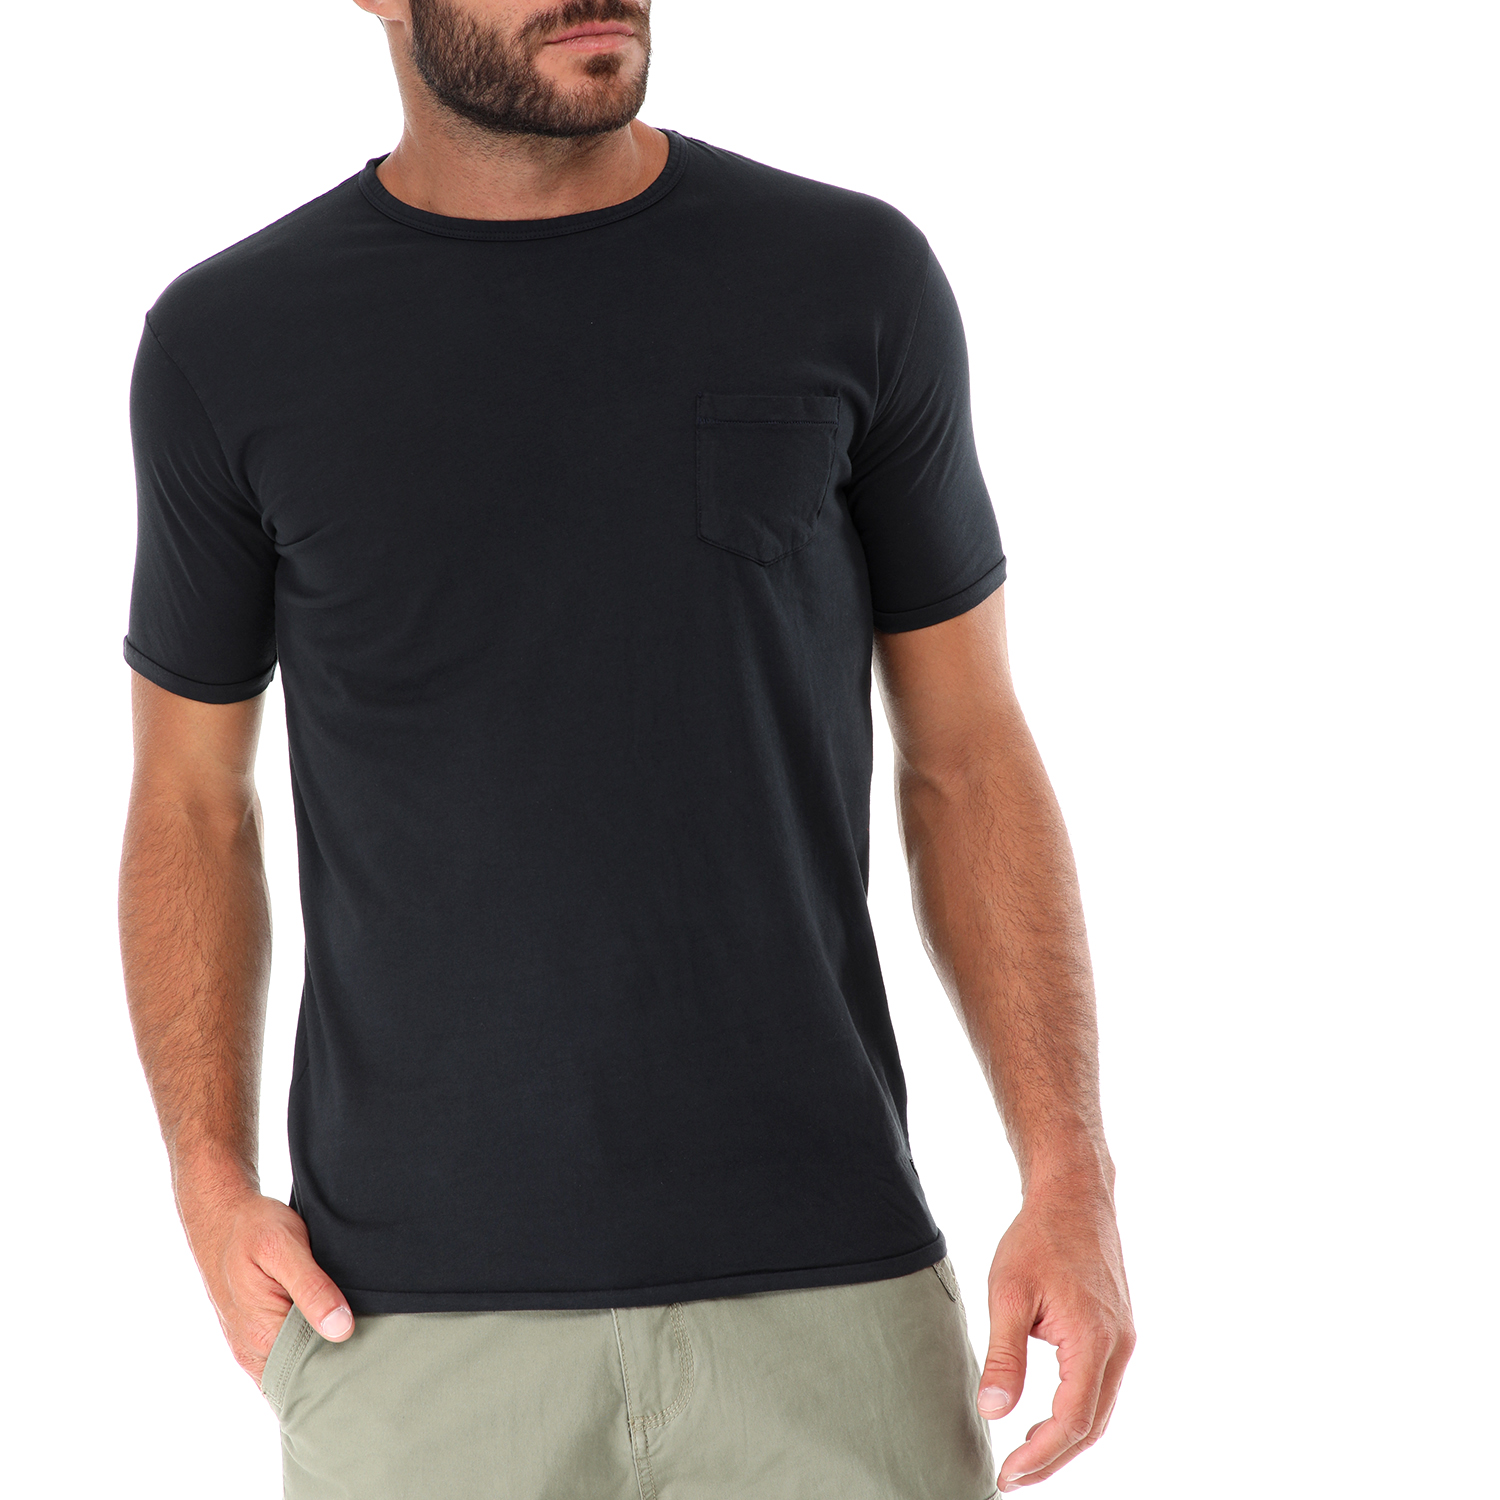 Ανδρικά/Ρούχα/Μπλούζες/Κοντομάνικες GREENWOOD - Ανδρικό t-shirt GREENWOOD μαύρο